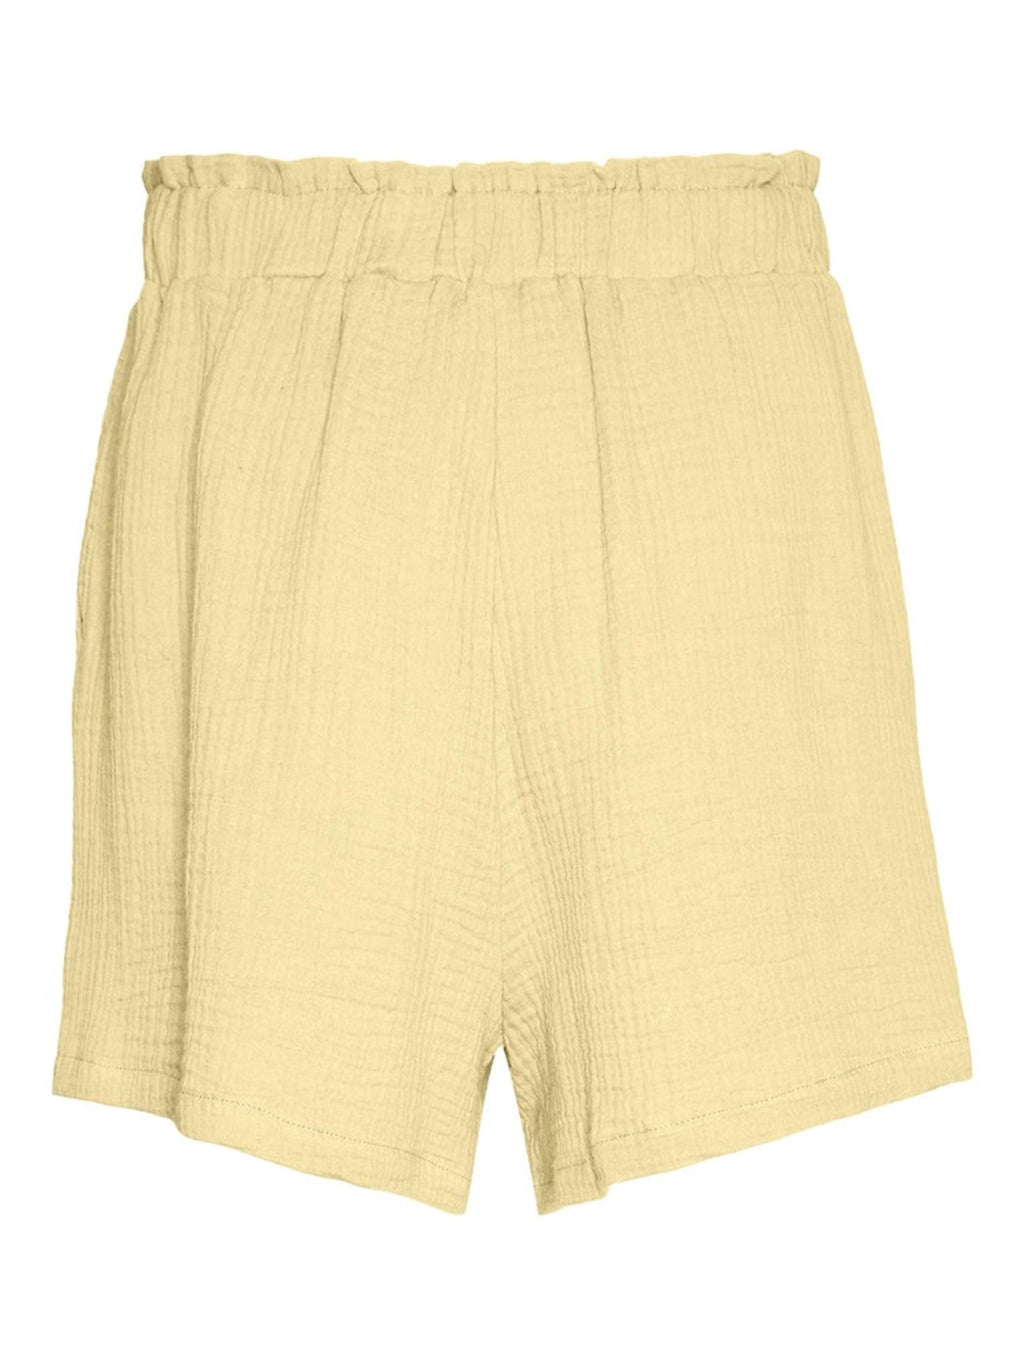 Natali shorts - citroen meringue